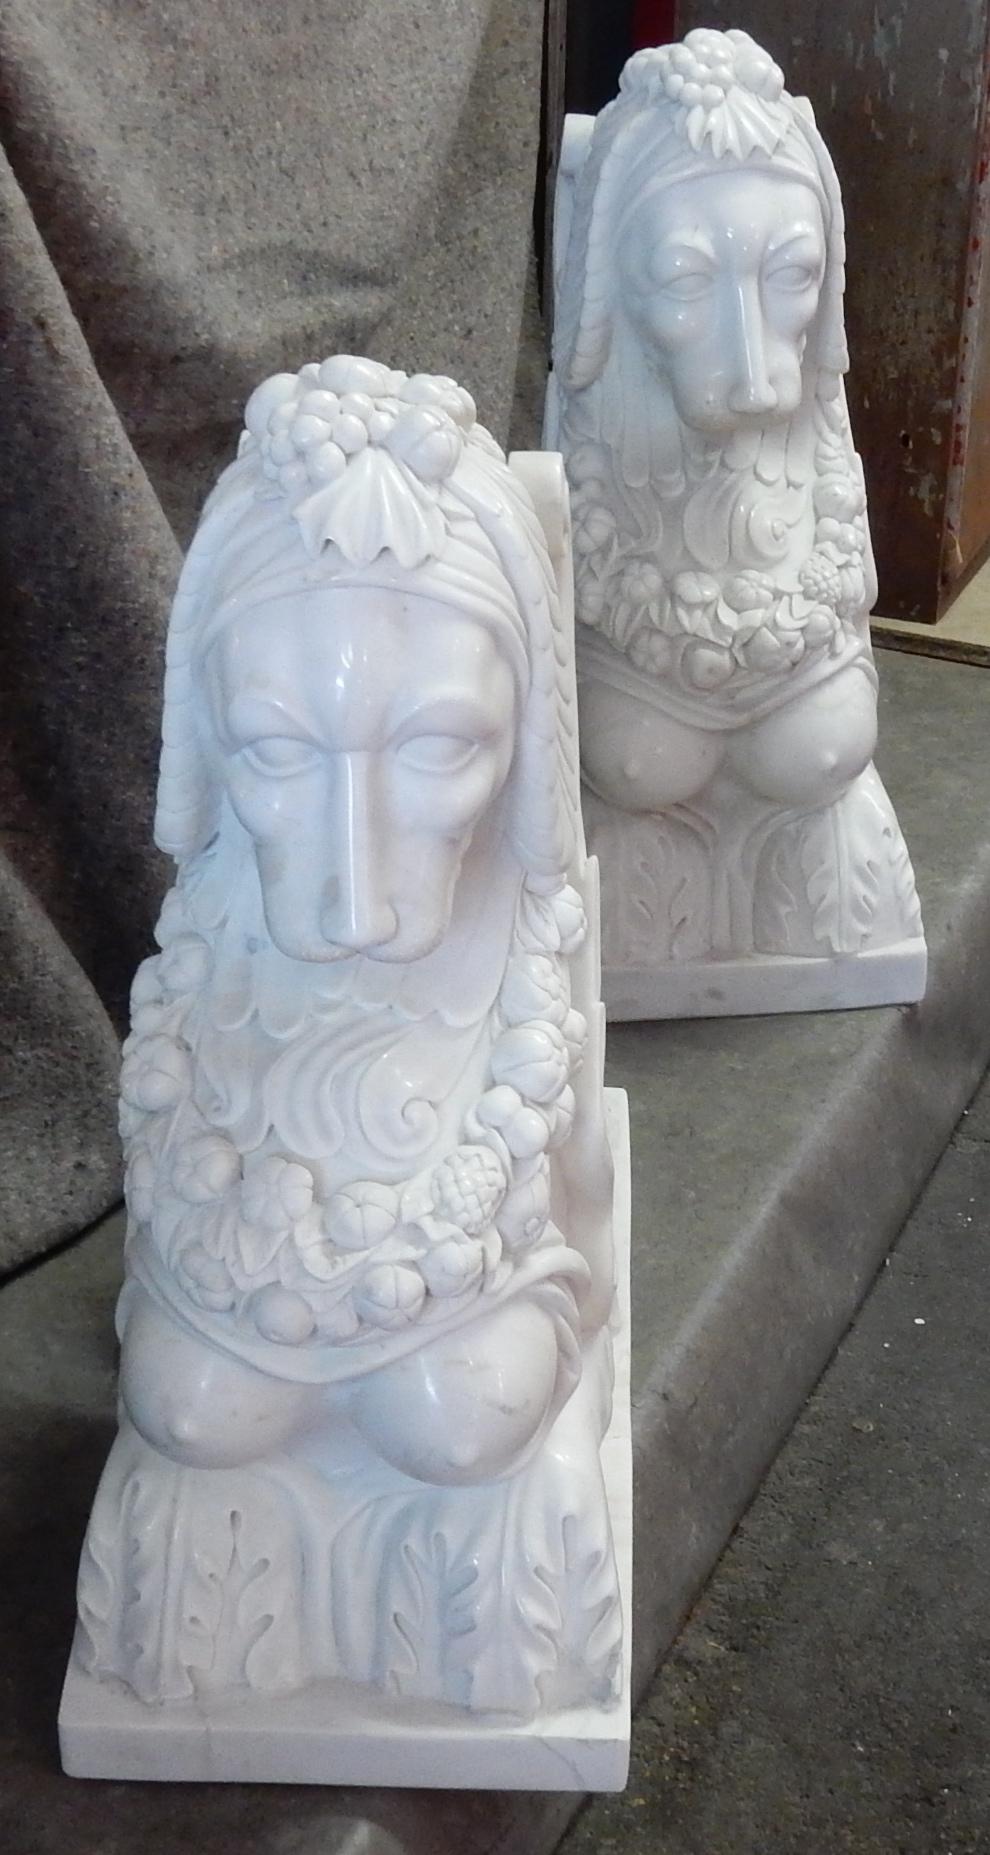 Geflügeltes Sphinxpaar, Köpfe von Affen, Körper von weiblichen Drachen, geschmückt mit einem Blumenkranz, weißer statuarischer Marmor, Gebrauchszustand, alte Restaurierungen, um 1950, Gewicht je 200/300 KG.